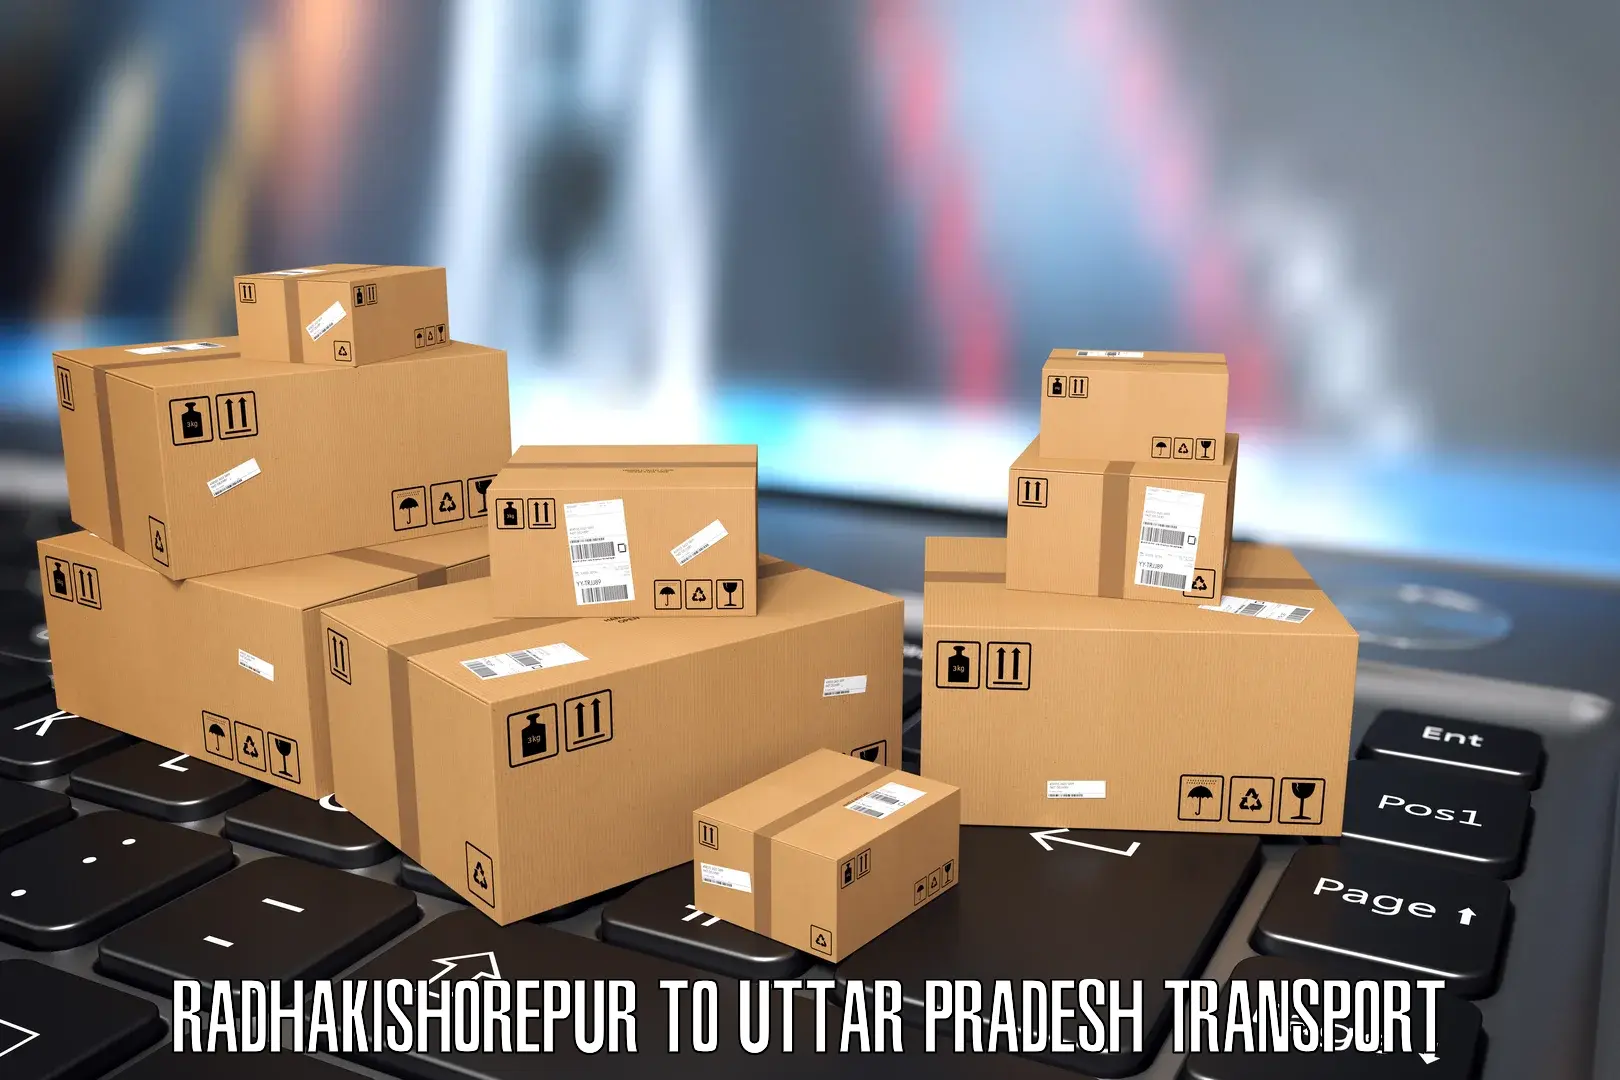 Luggage transport services Radhakishorepur to Budhana